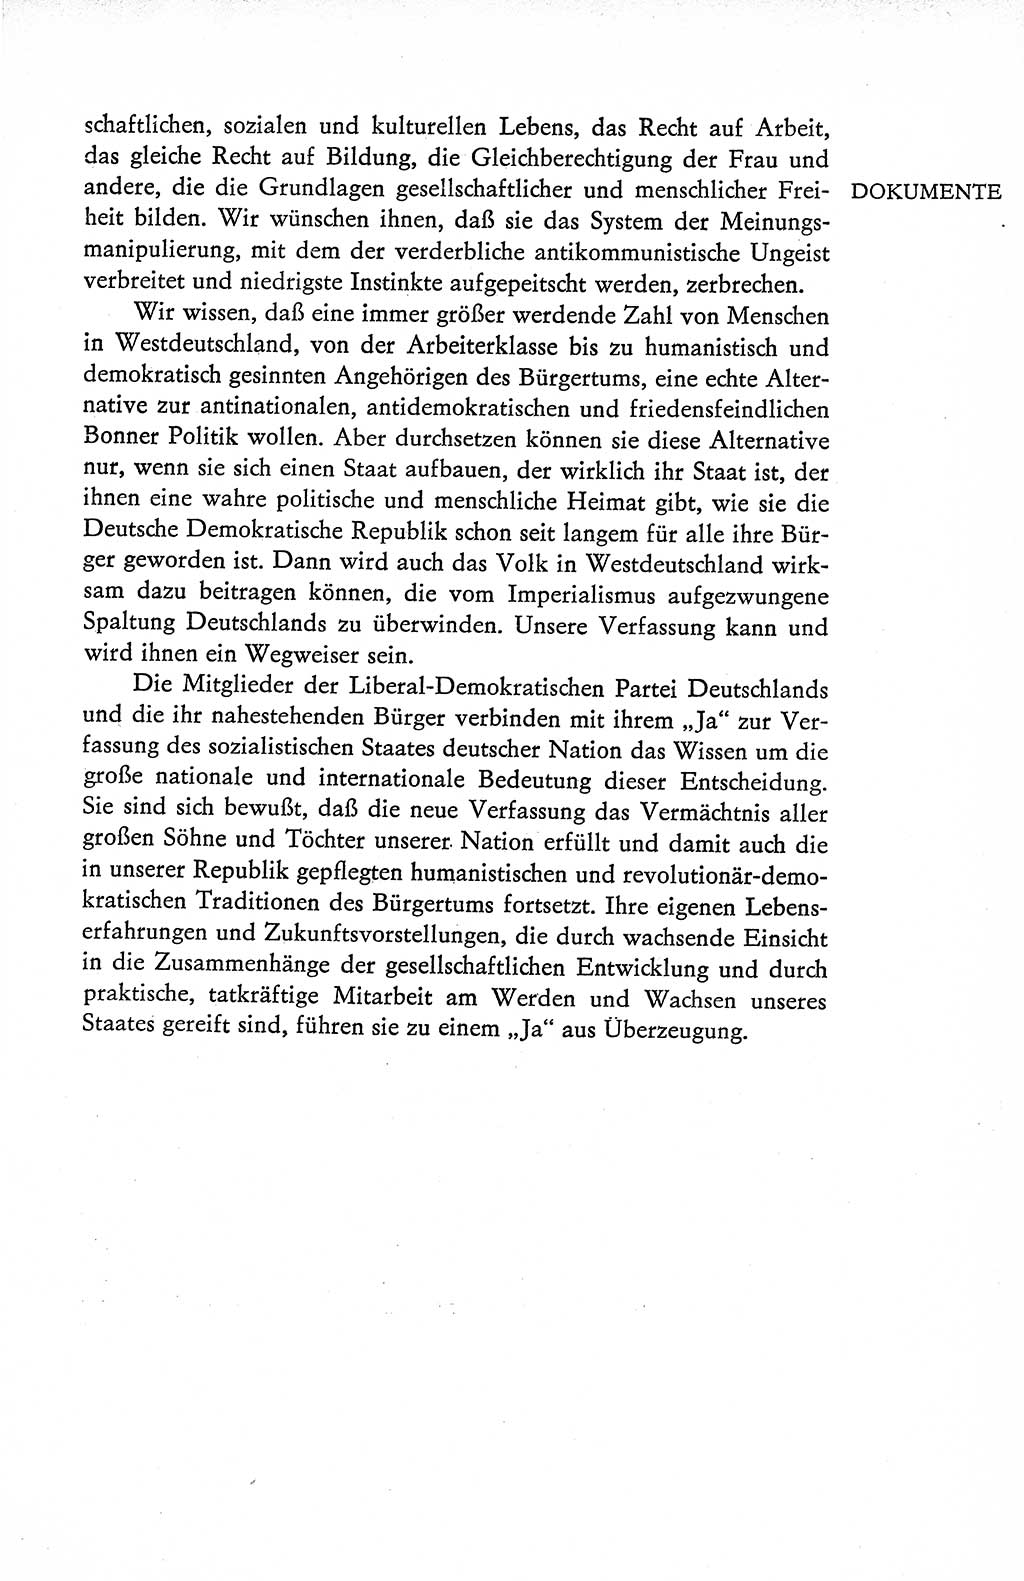 Verfassung der Deutschen Demokratischen Republik (DDR), Dokumente, Kommentar 1969, Band 1, Seite 115 (Verf. DDR Dok. Komm. 1969, Bd. 1, S. 115)